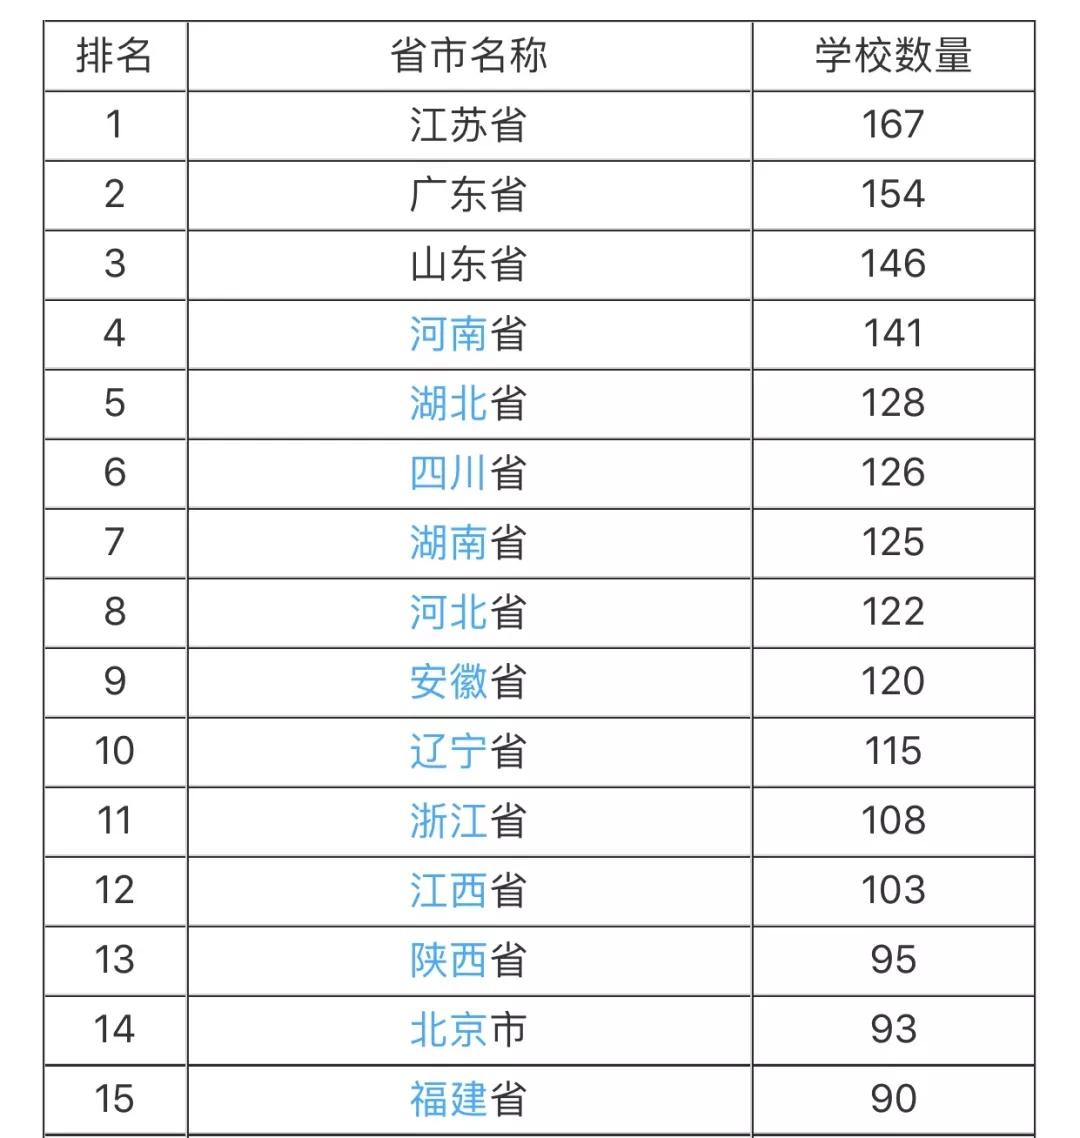 中国大学数量最多的省份排名,毫无悬念,